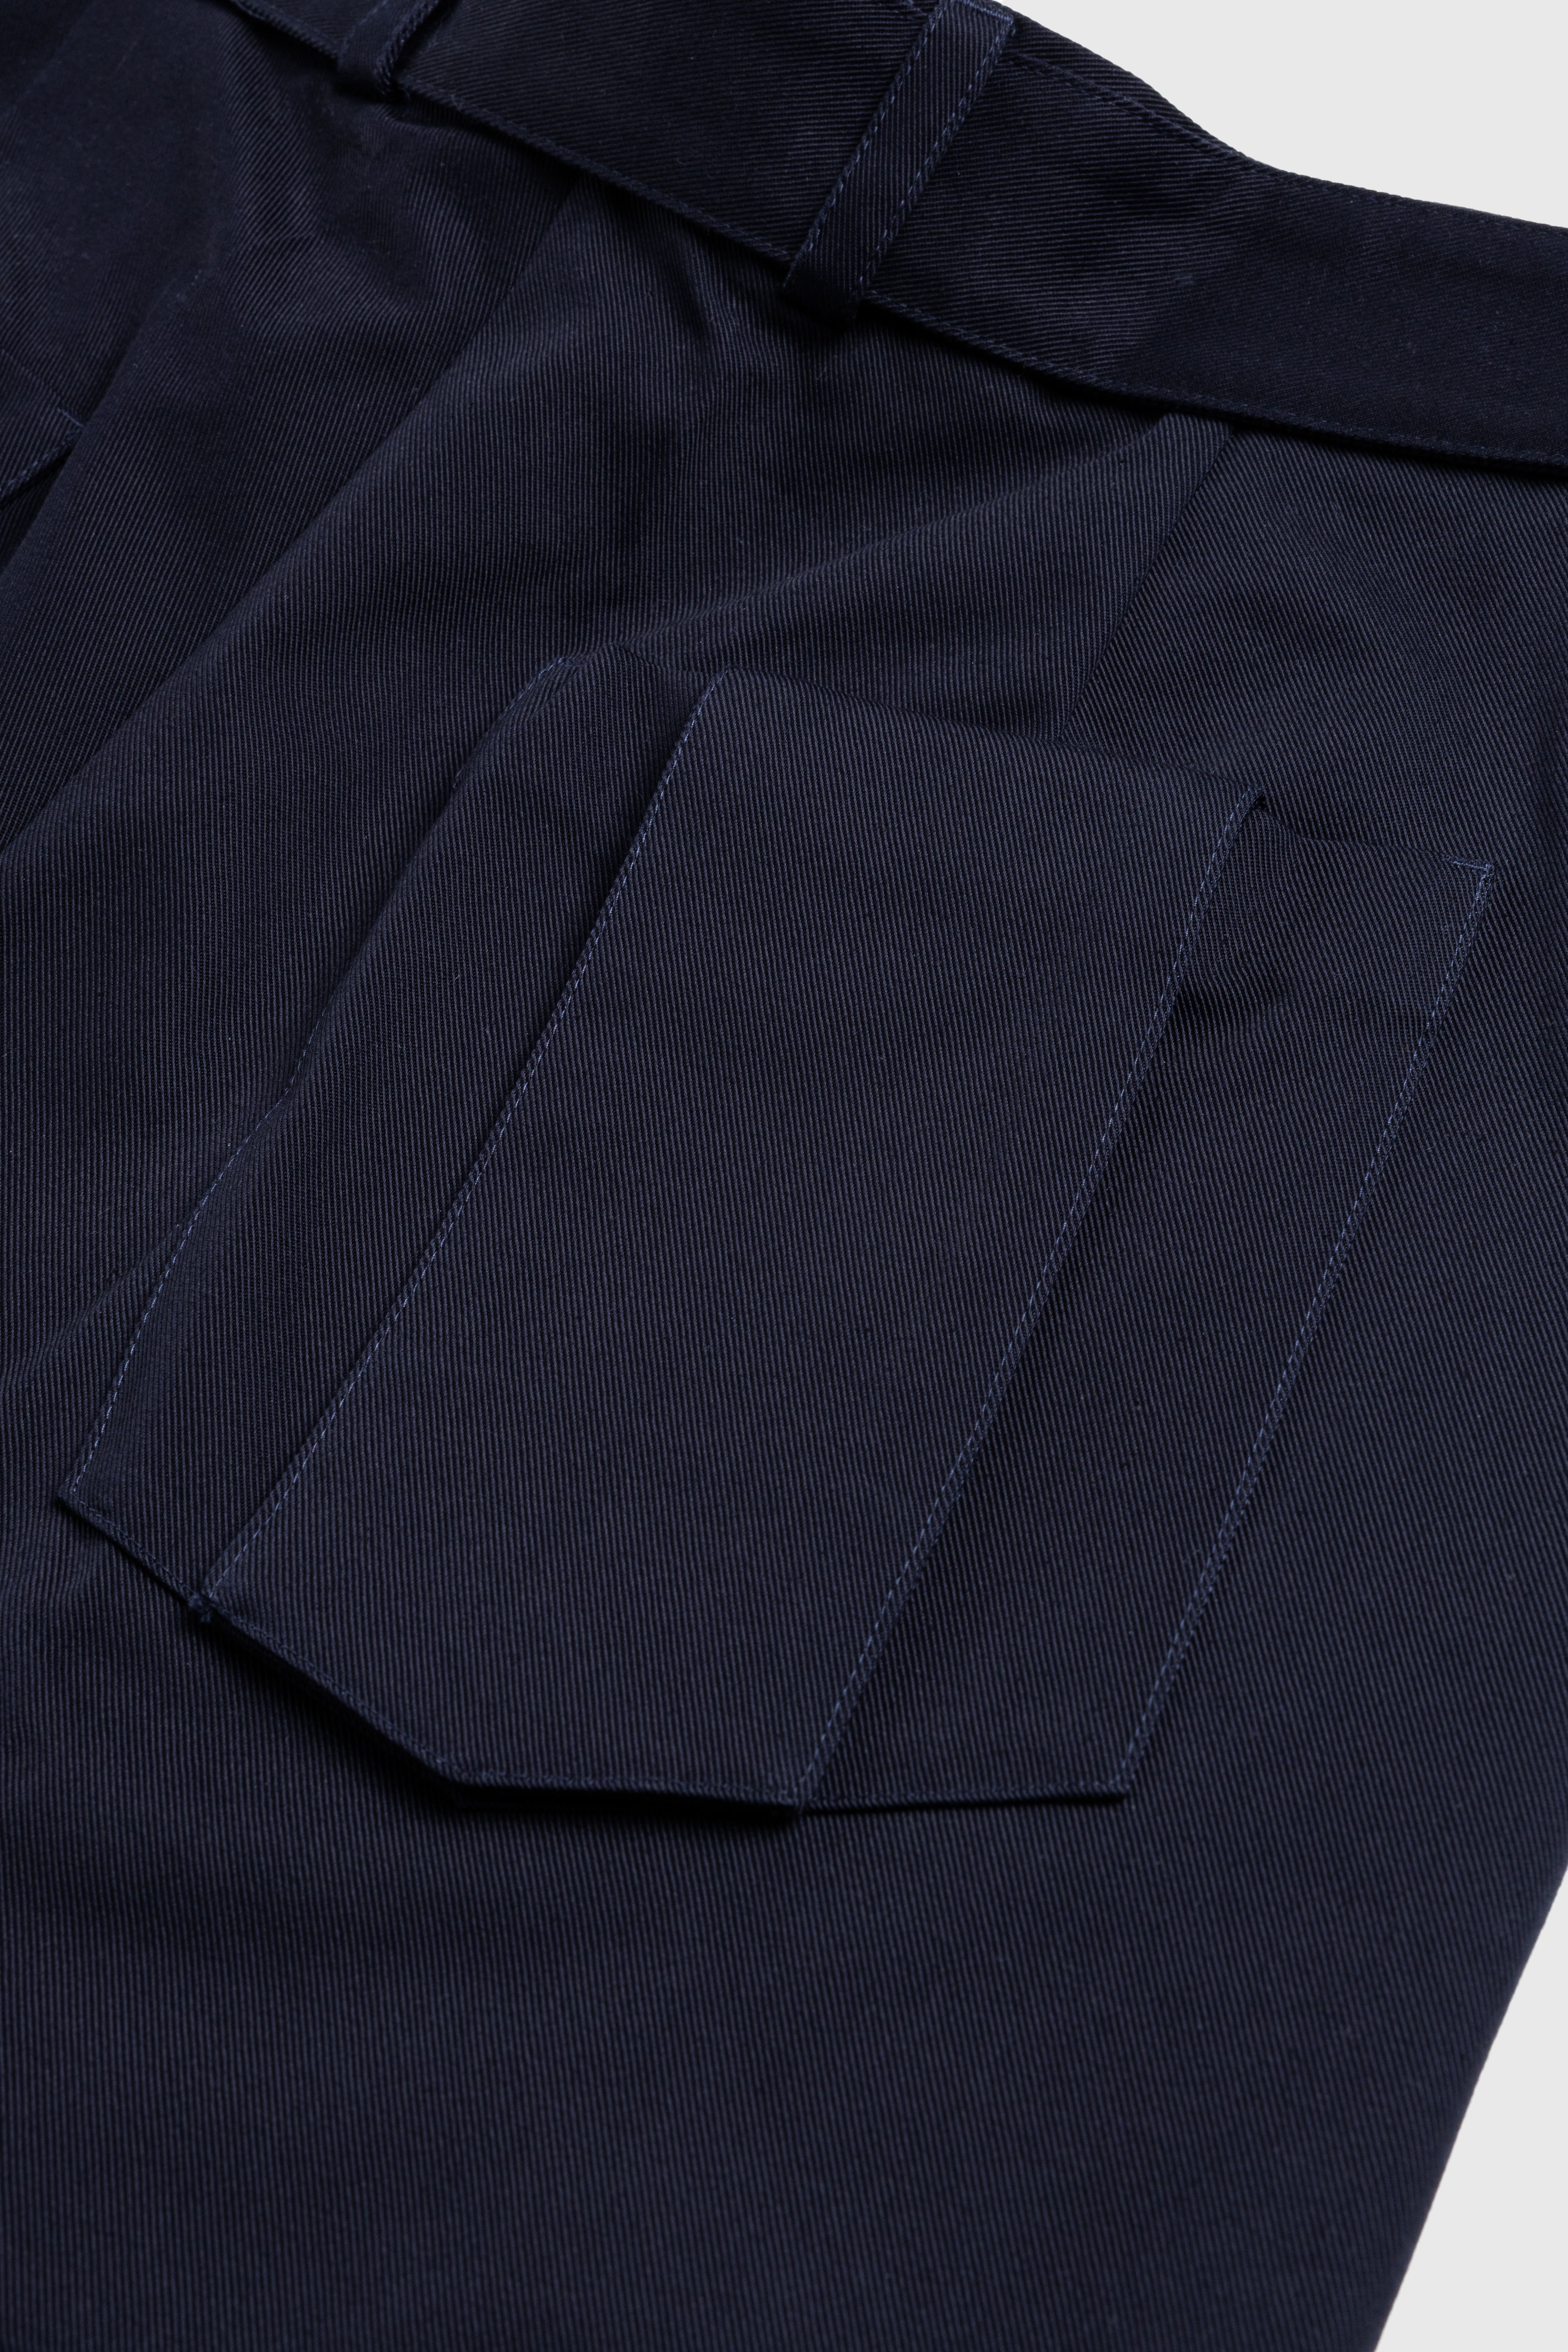 Jil Sander - Belted Shorts Navy - Clothing - Blue - Image 4